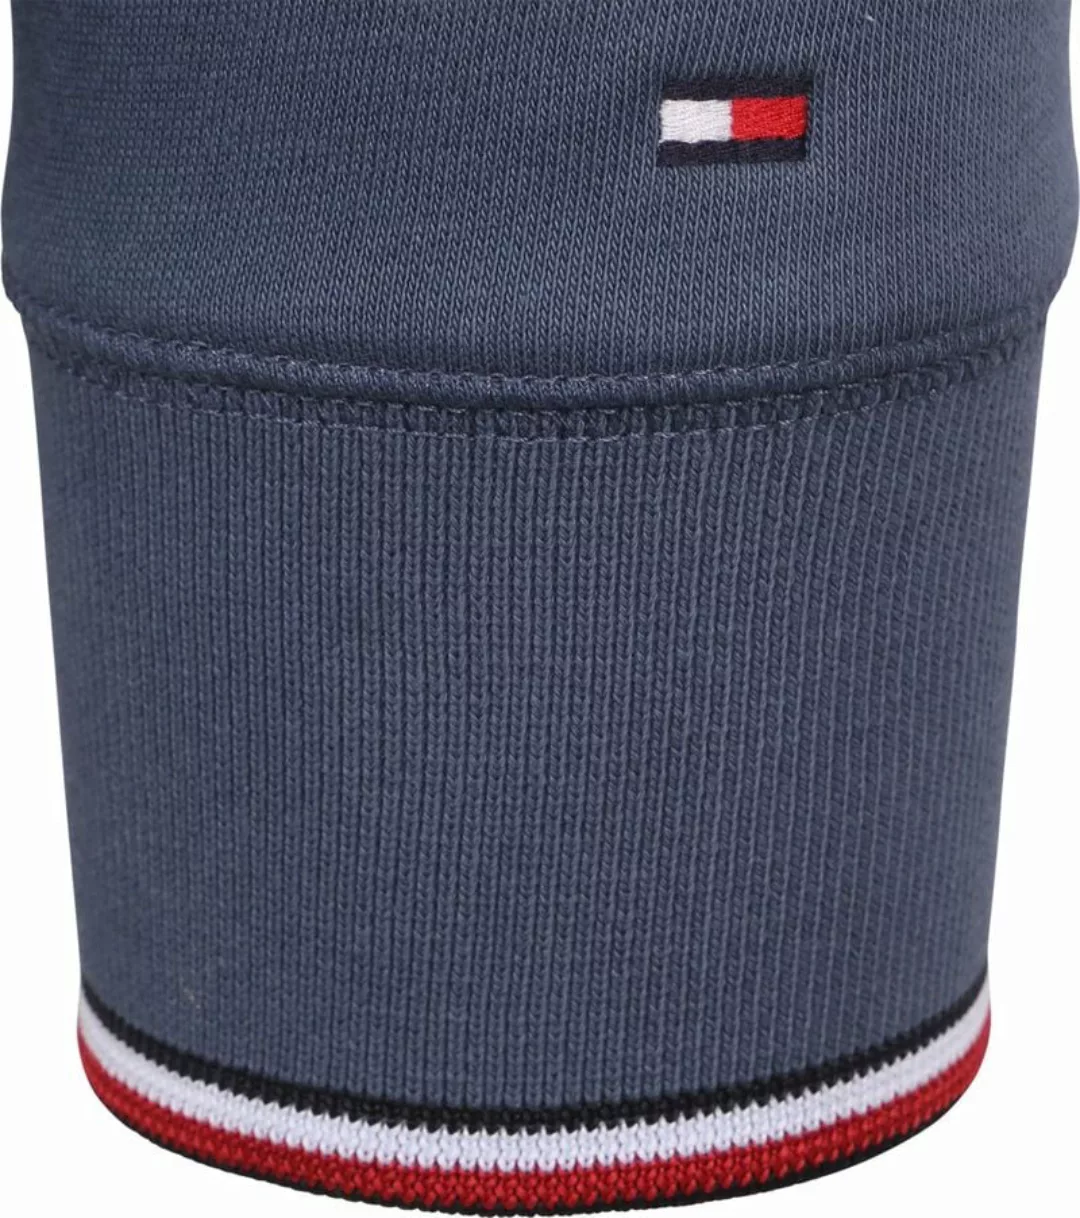 Tommy Hilfiger Sweater Logo Tipped Dunkelblau - Größe L günstig online kaufen